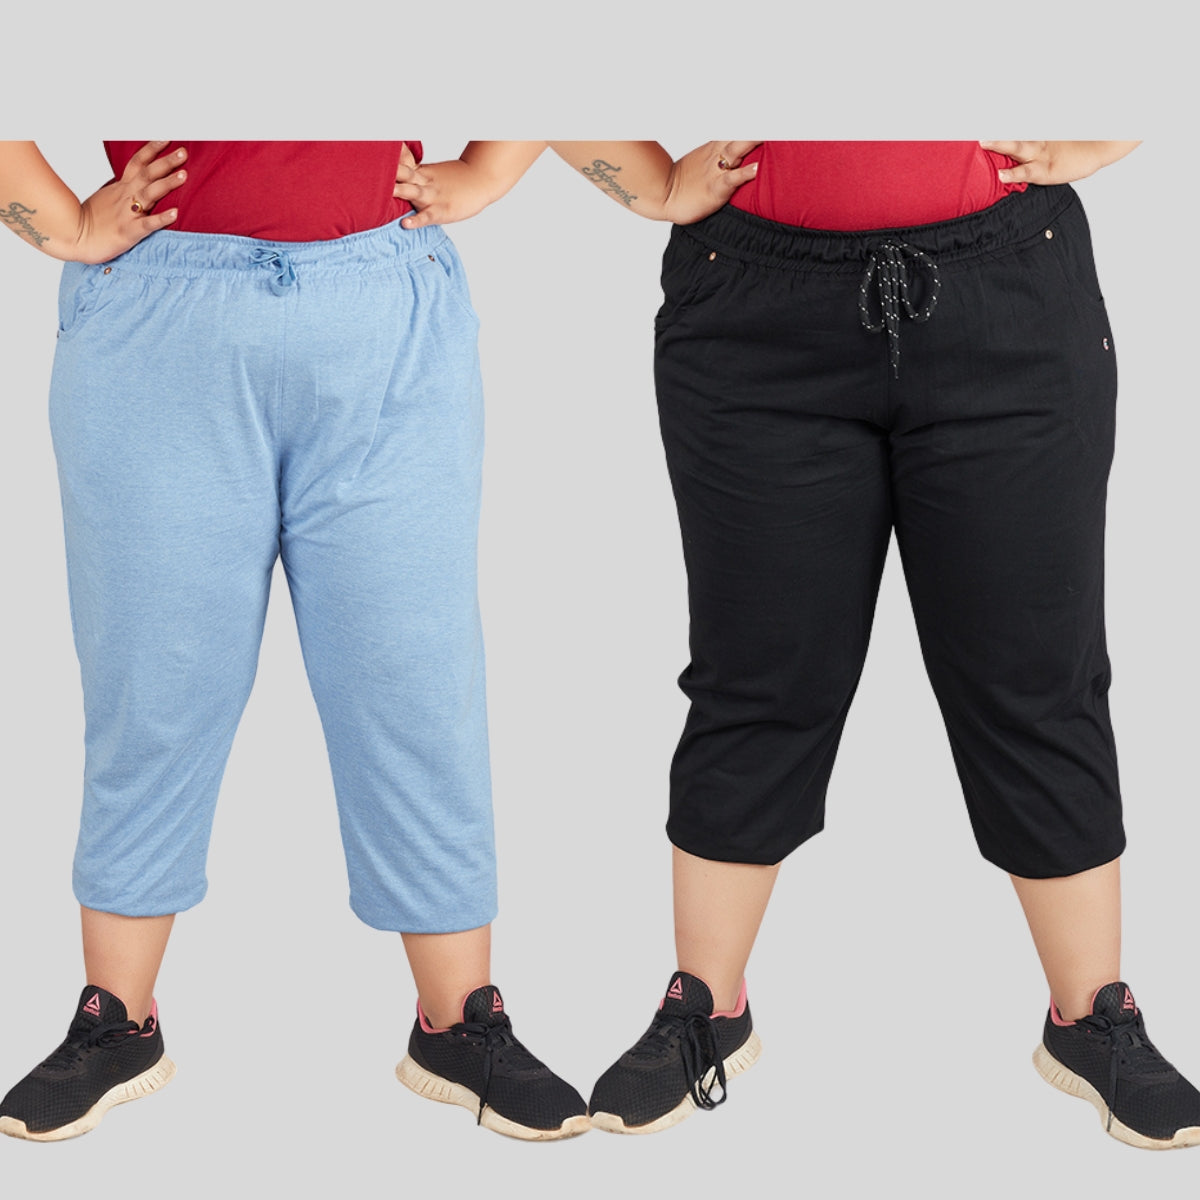 Cotton Capris For Women - Half Pants Pack of 2 (Sky Blue & Black)